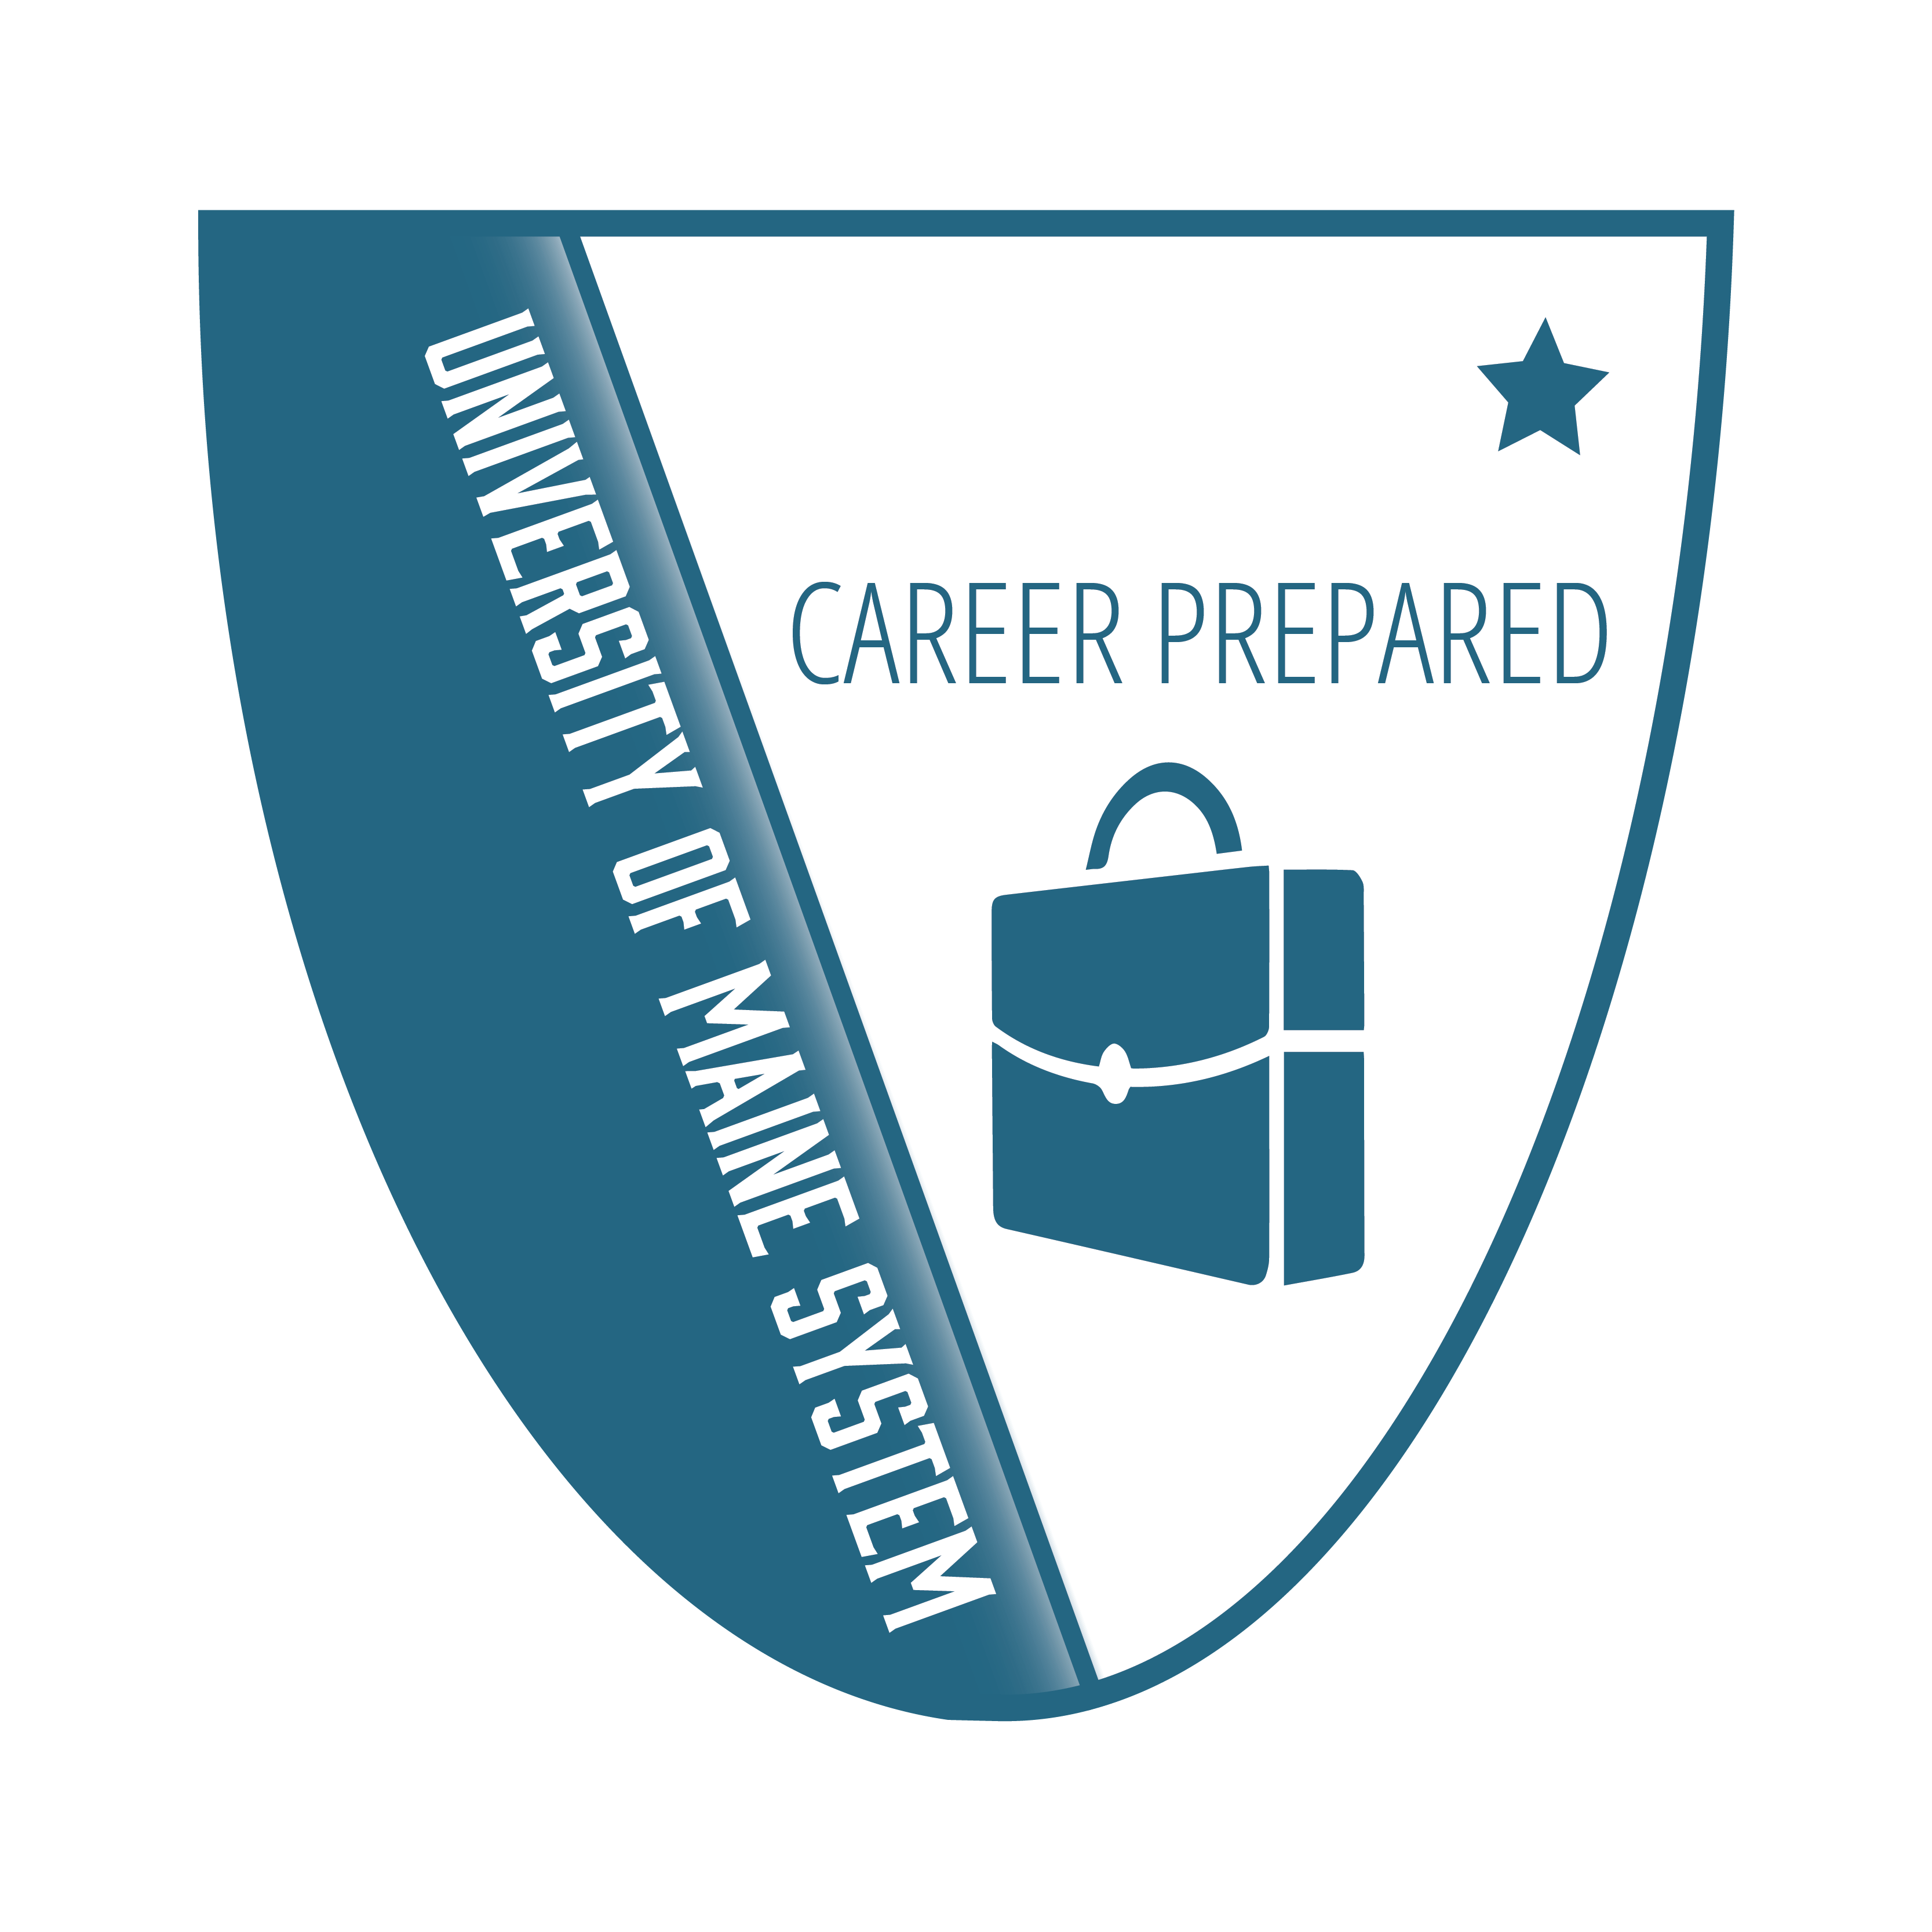 Pathway Badges Career Prepared